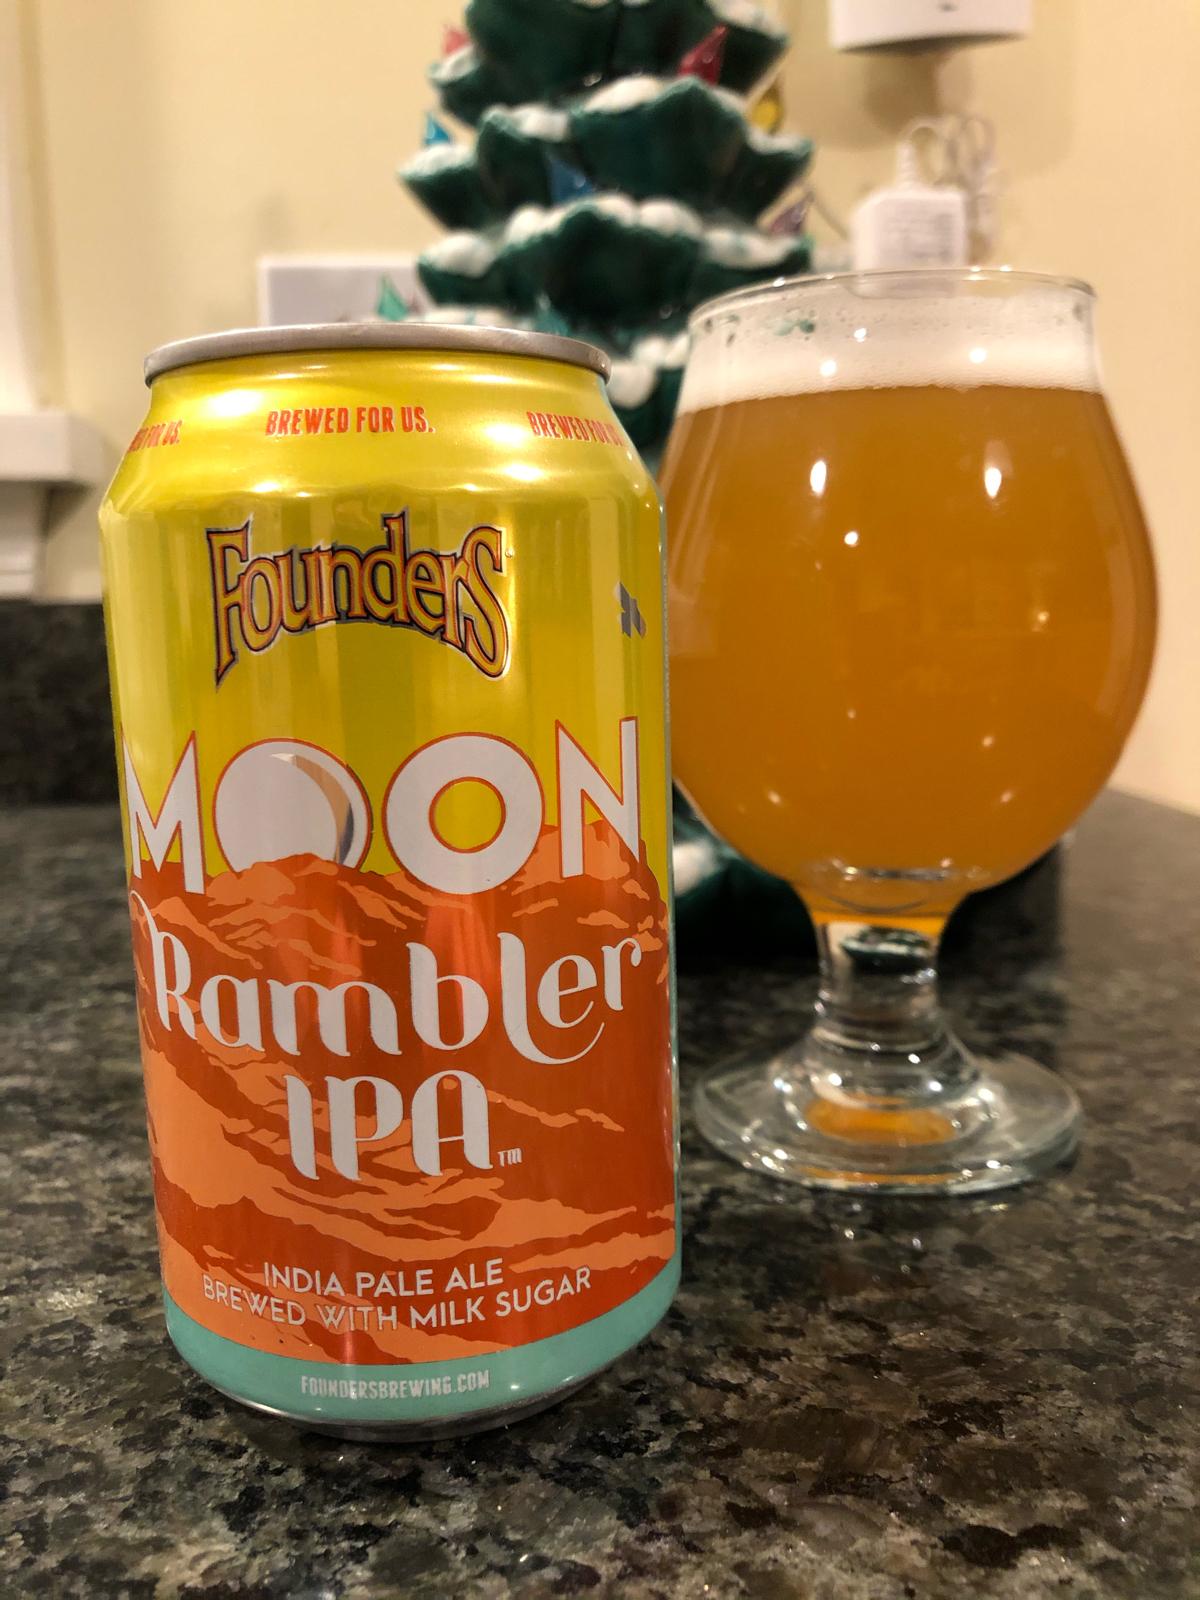 Moon Rambler IPA